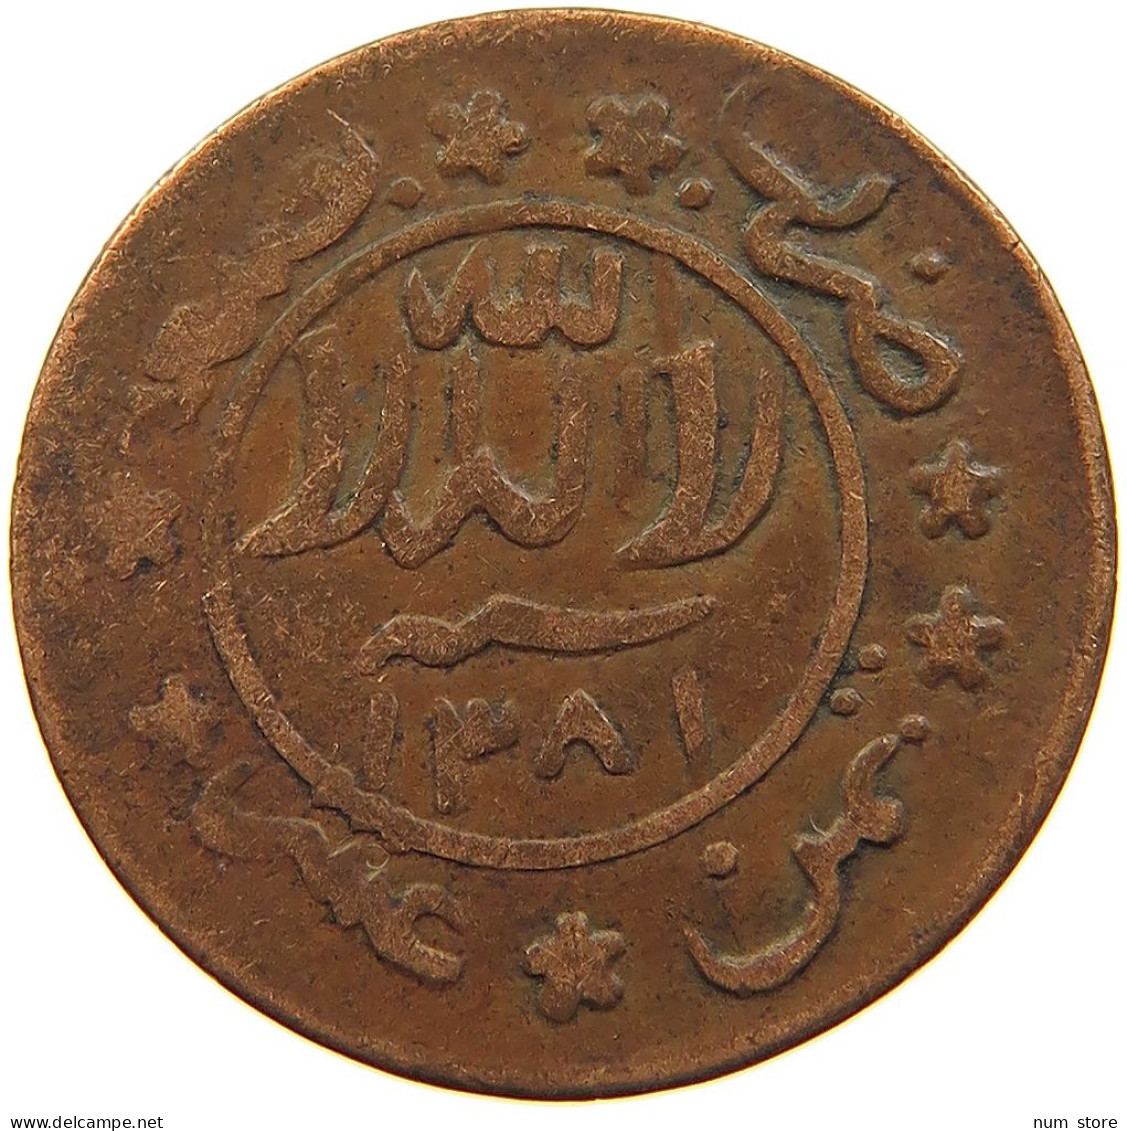 YEMEN 1/80 RIYAL 1381 Ahmad Bin Yahya (1948-1962) #s103 0025 - Jemen